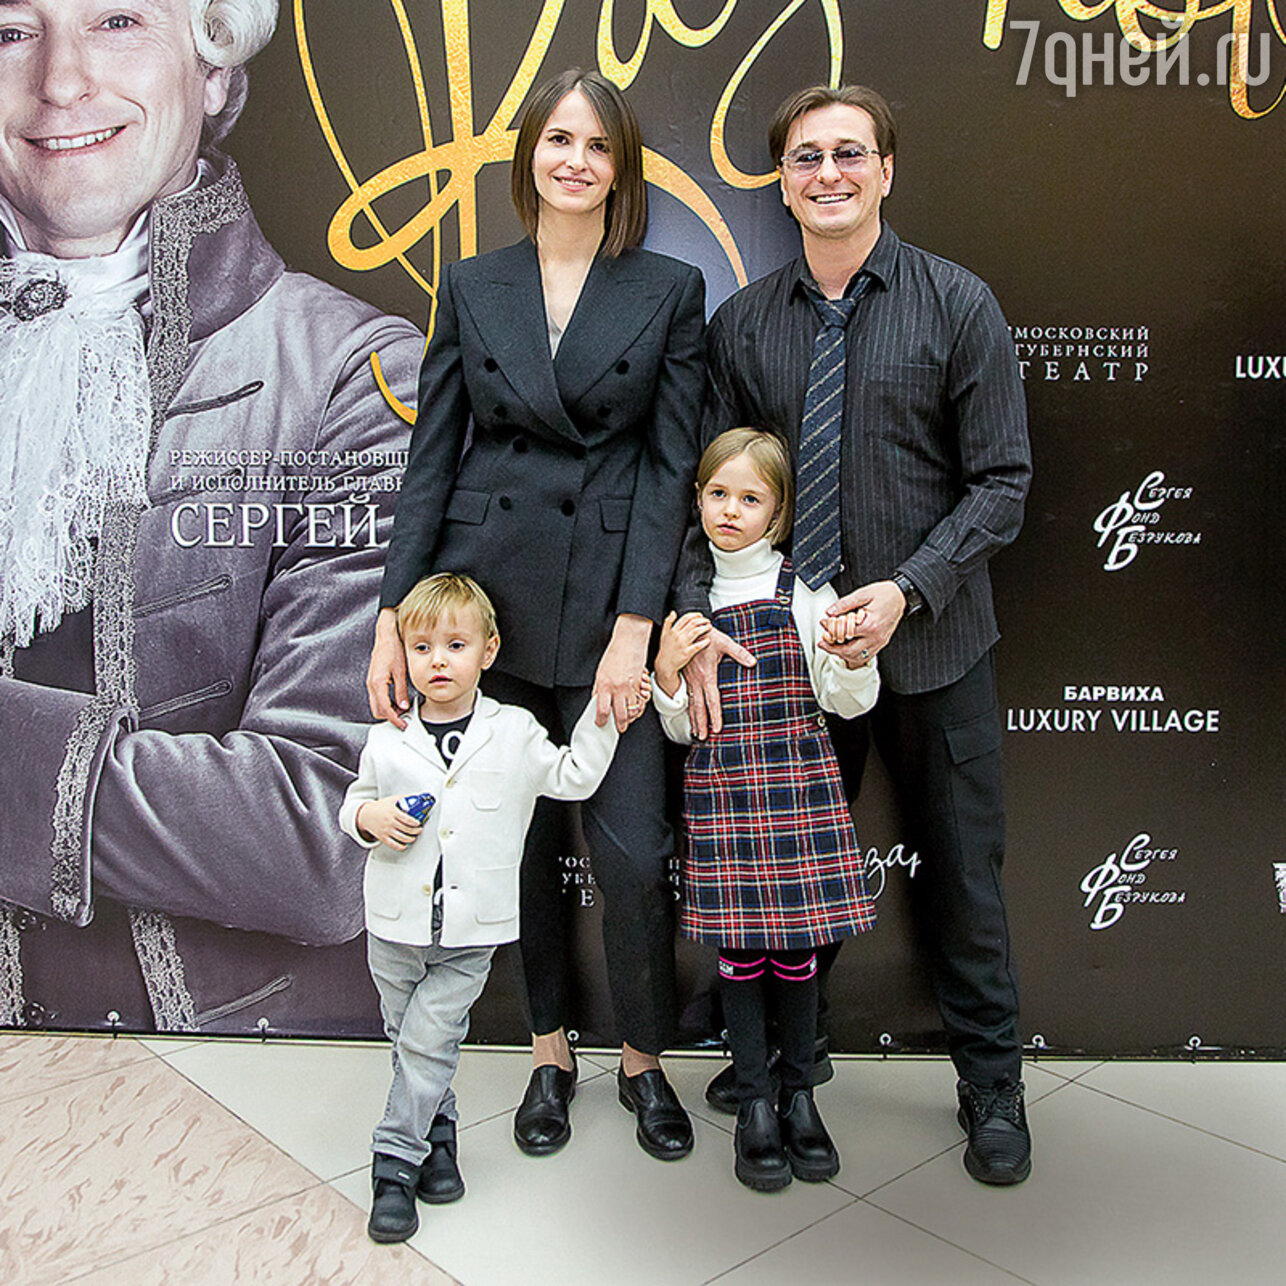 Сергей Безруков с женой Анной Матисон и детьми — Машей и Степой. Фото